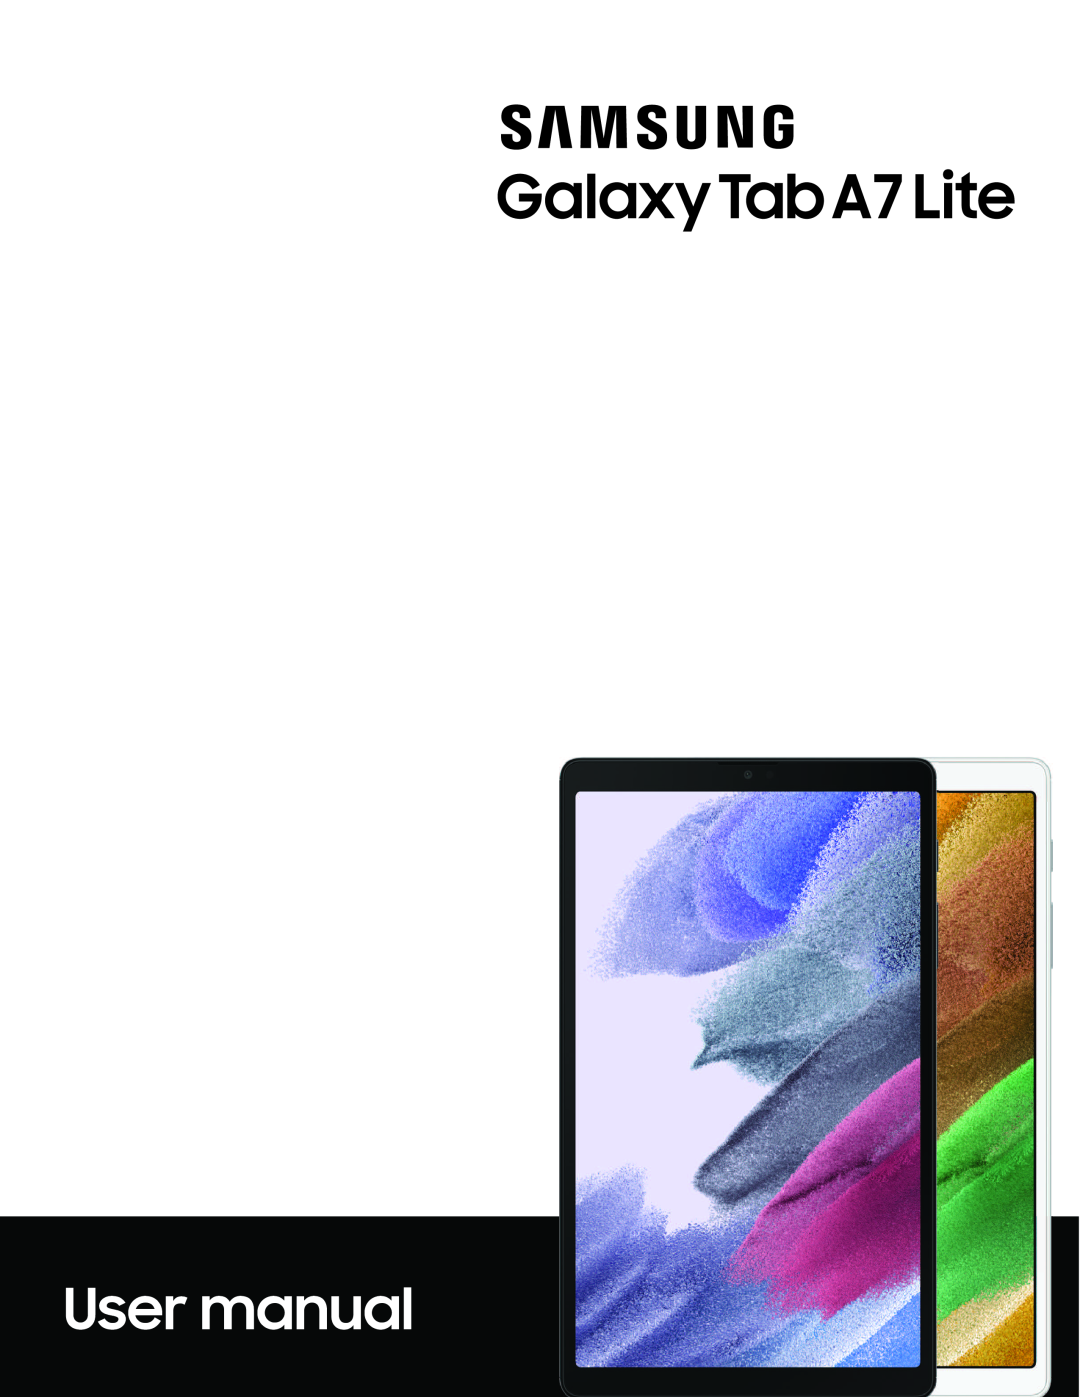 Galaxy Tab A7 Lite Wi-Fi SM-T220NZSAXAR